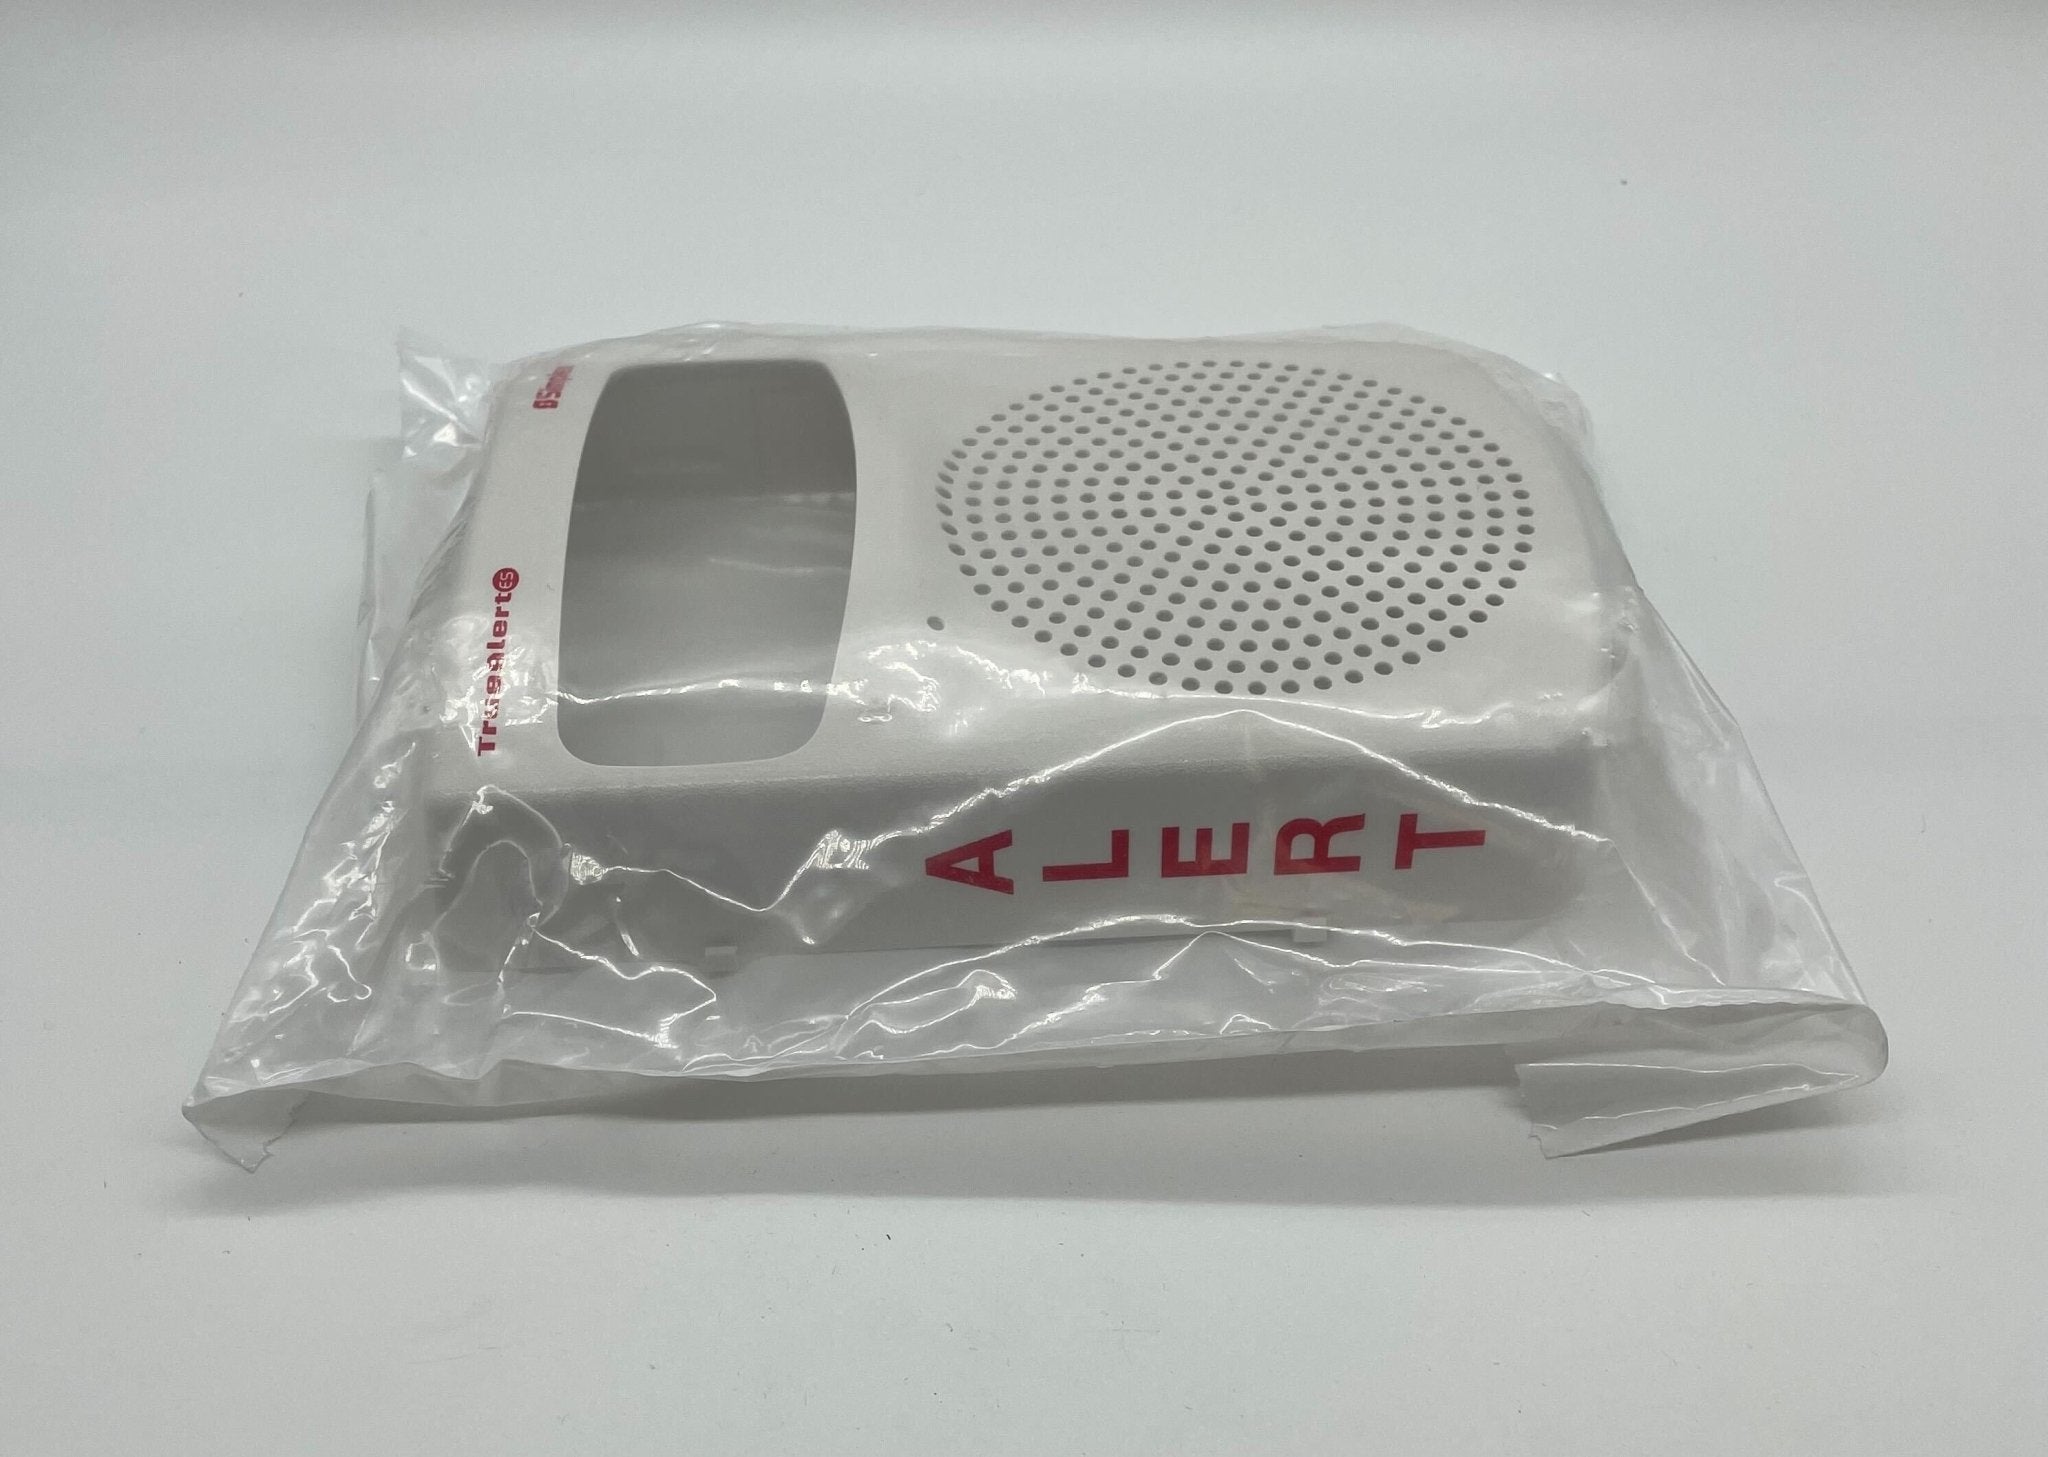 Simplex 49SVC-WWALT-O - The Fire Alarm Supplier